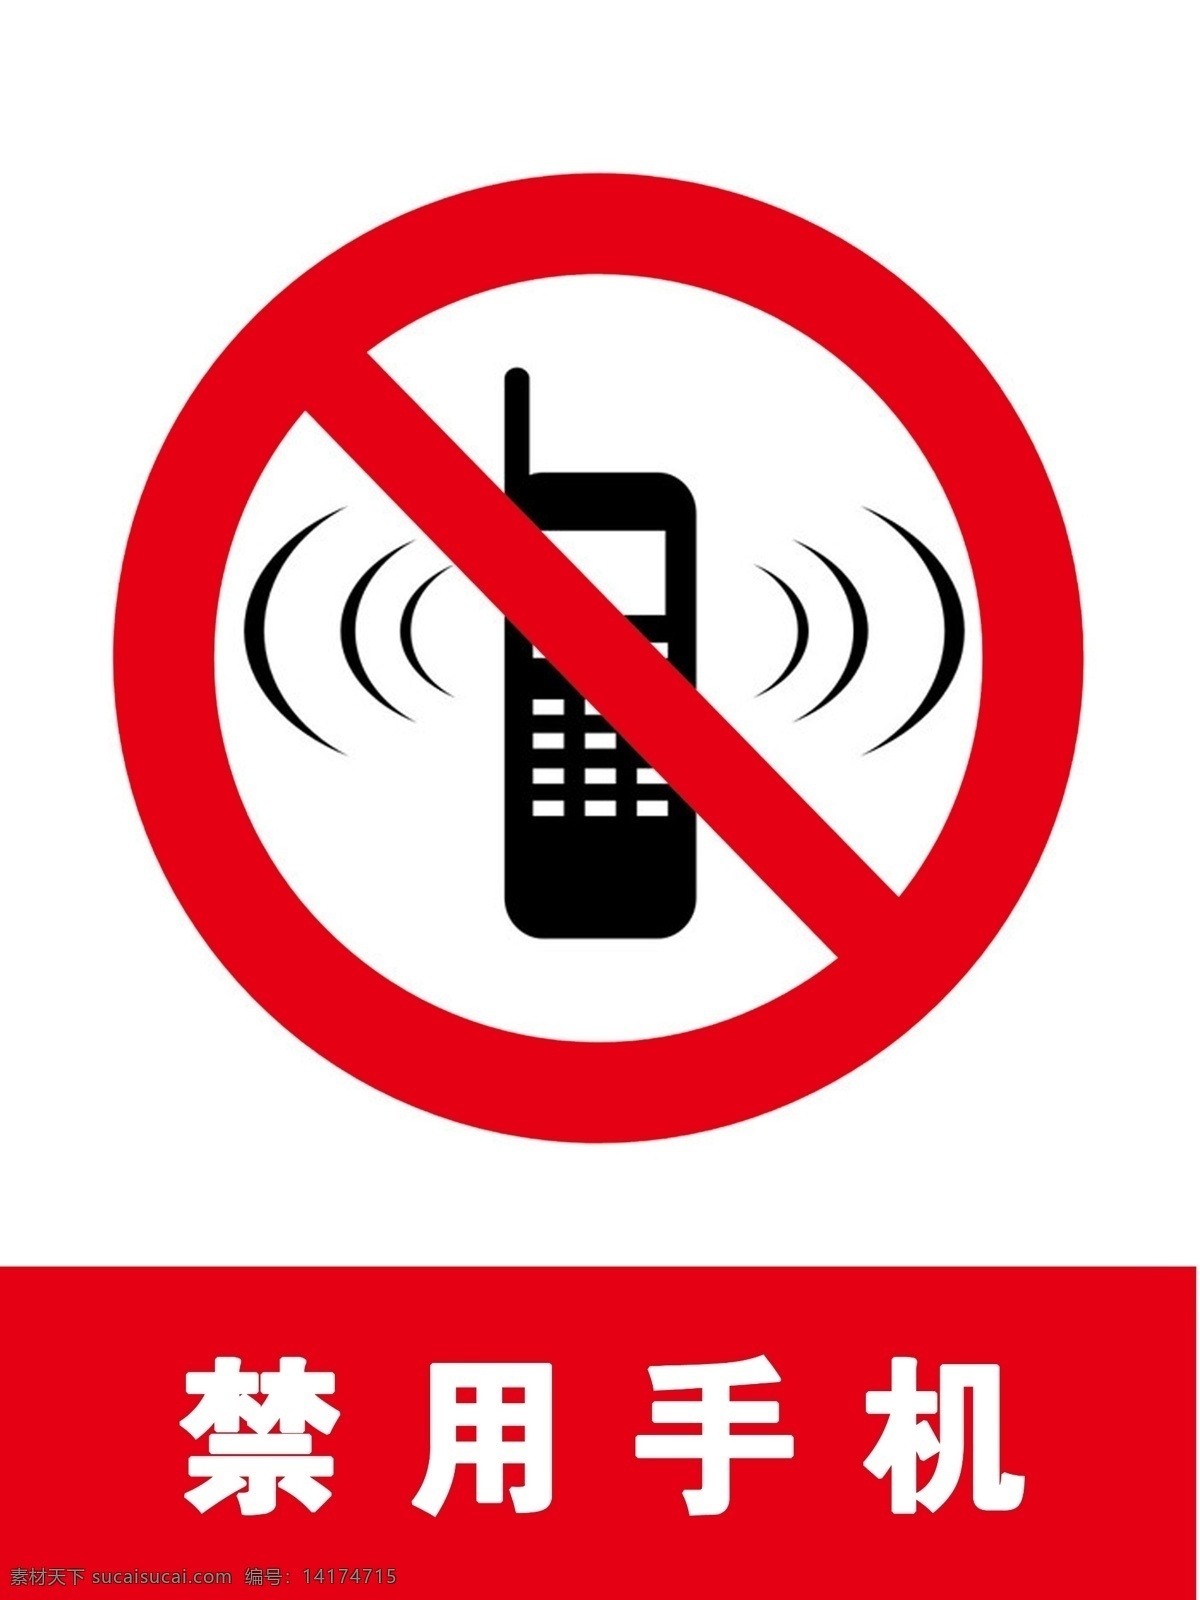 标志 禁止 禁用手机 警示 手机 标志图标 公共标识标志